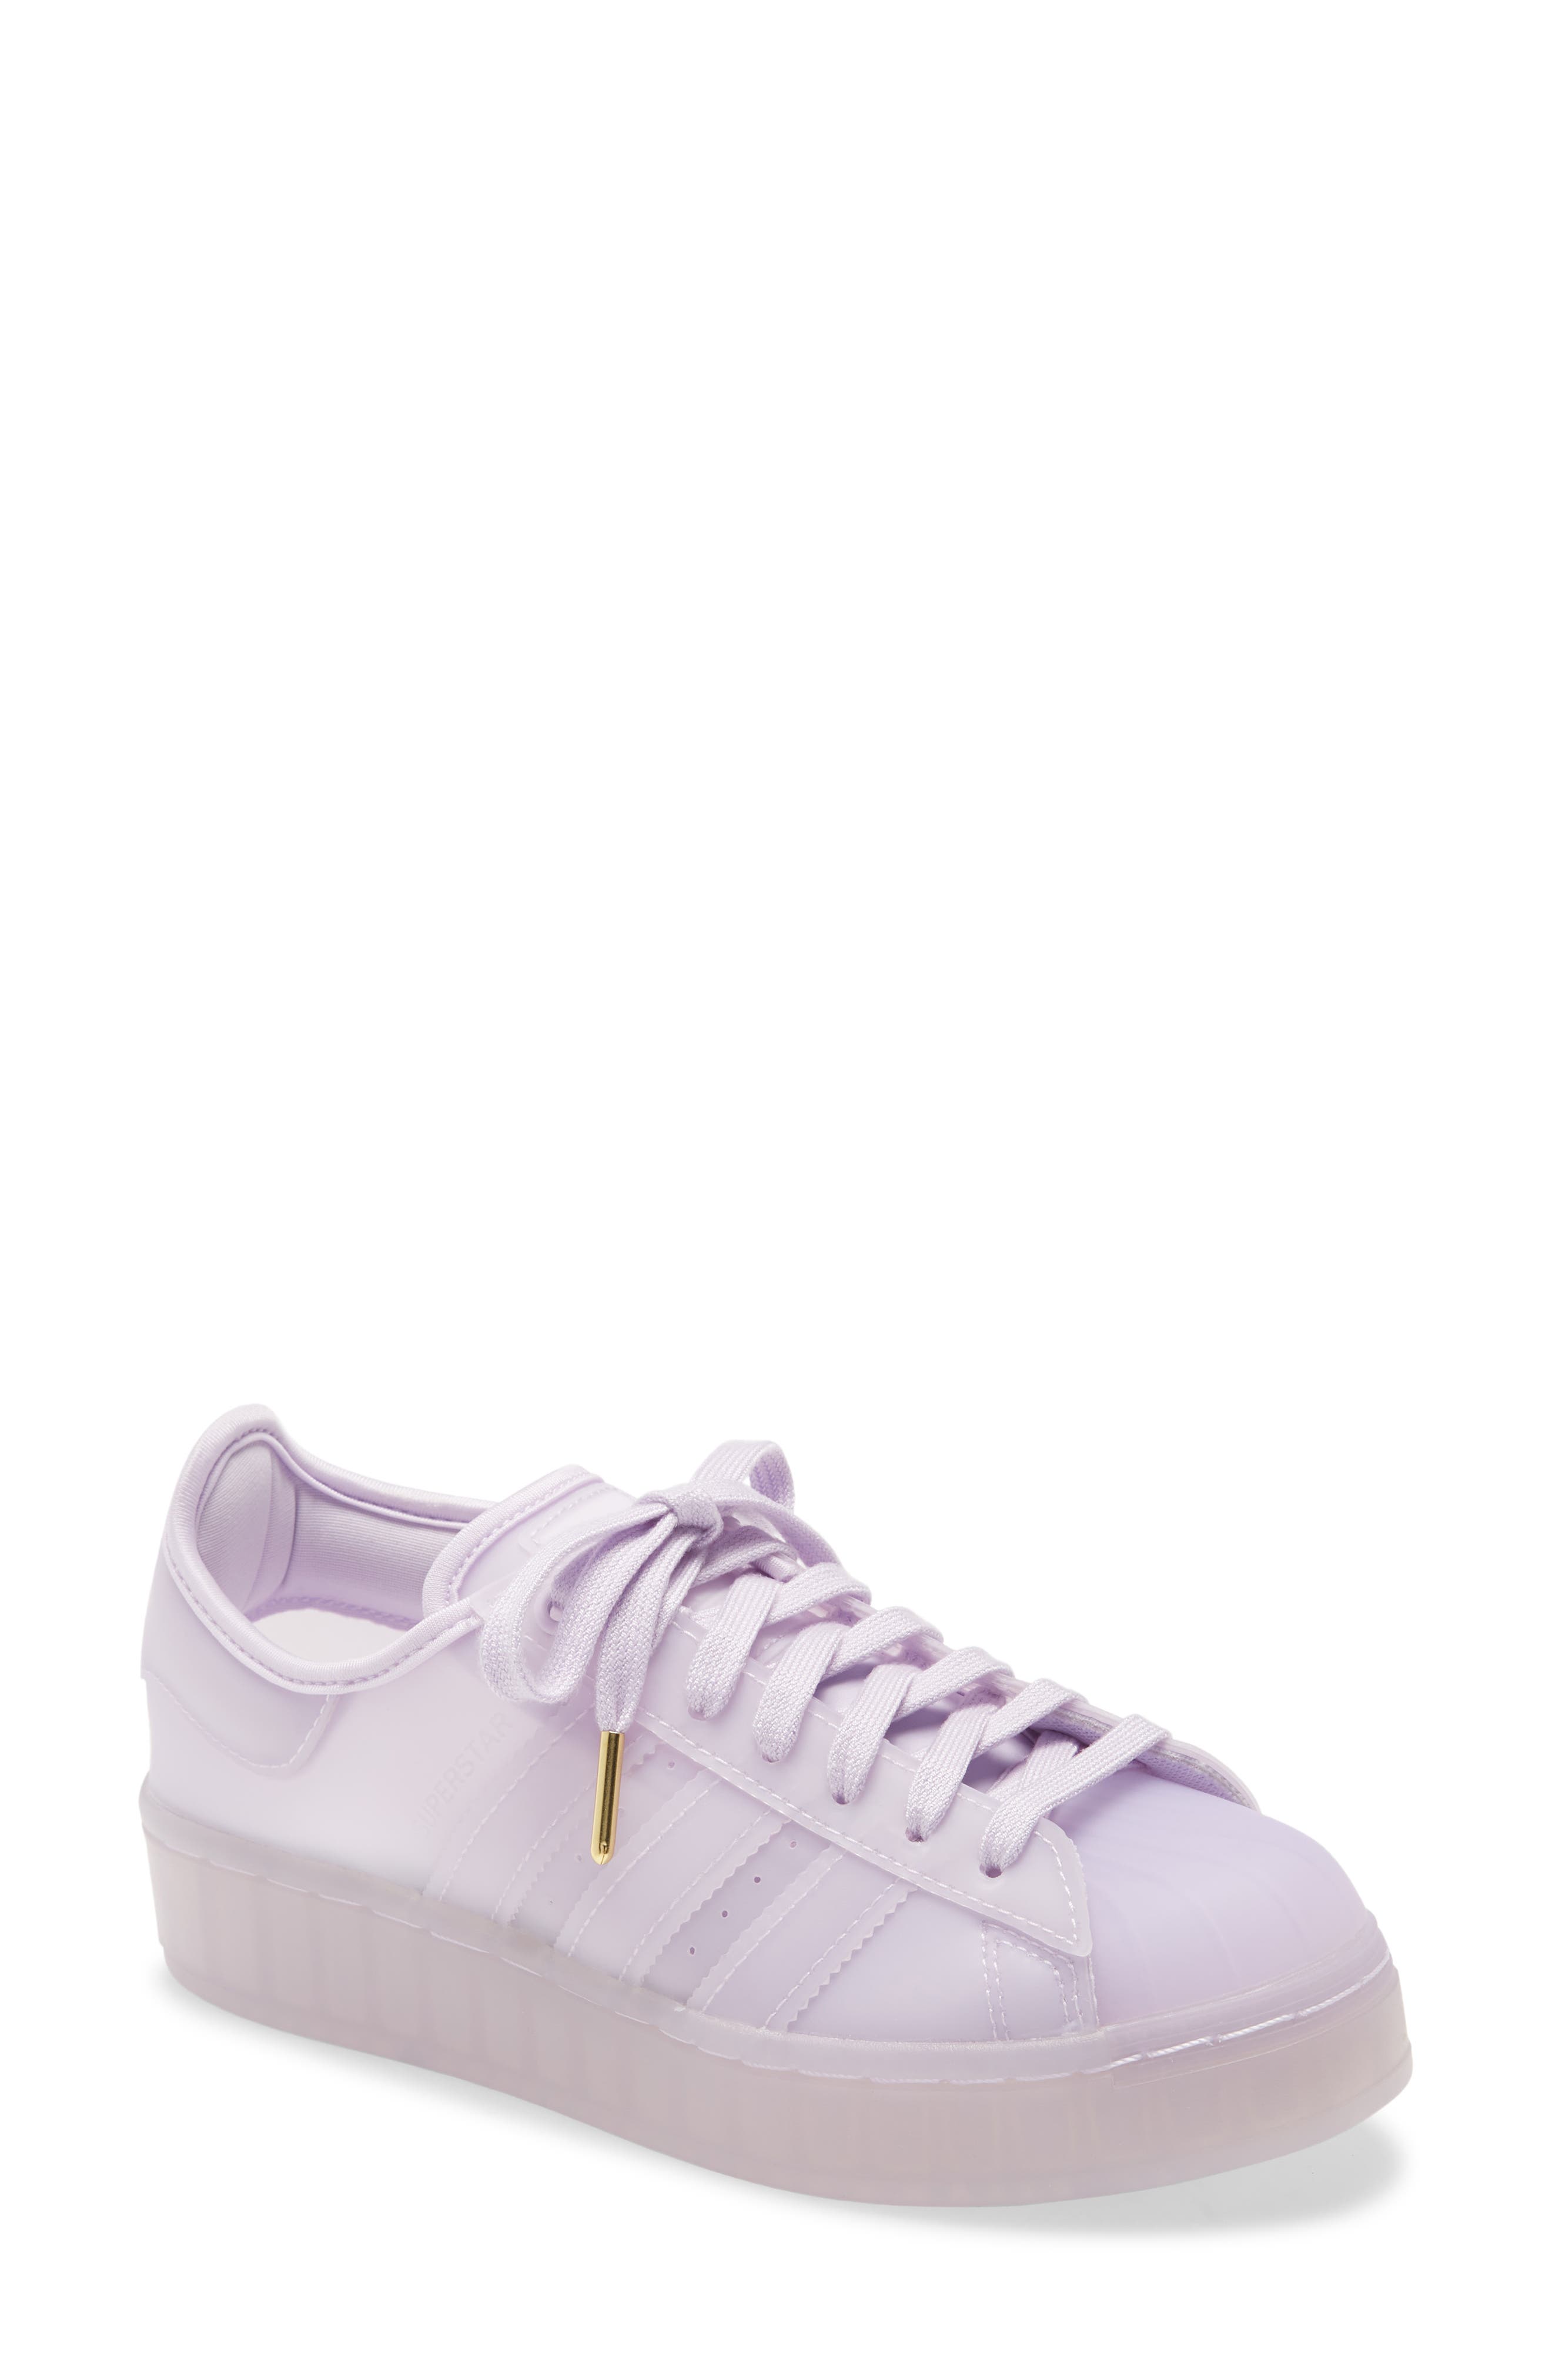 light purple sneakers womens